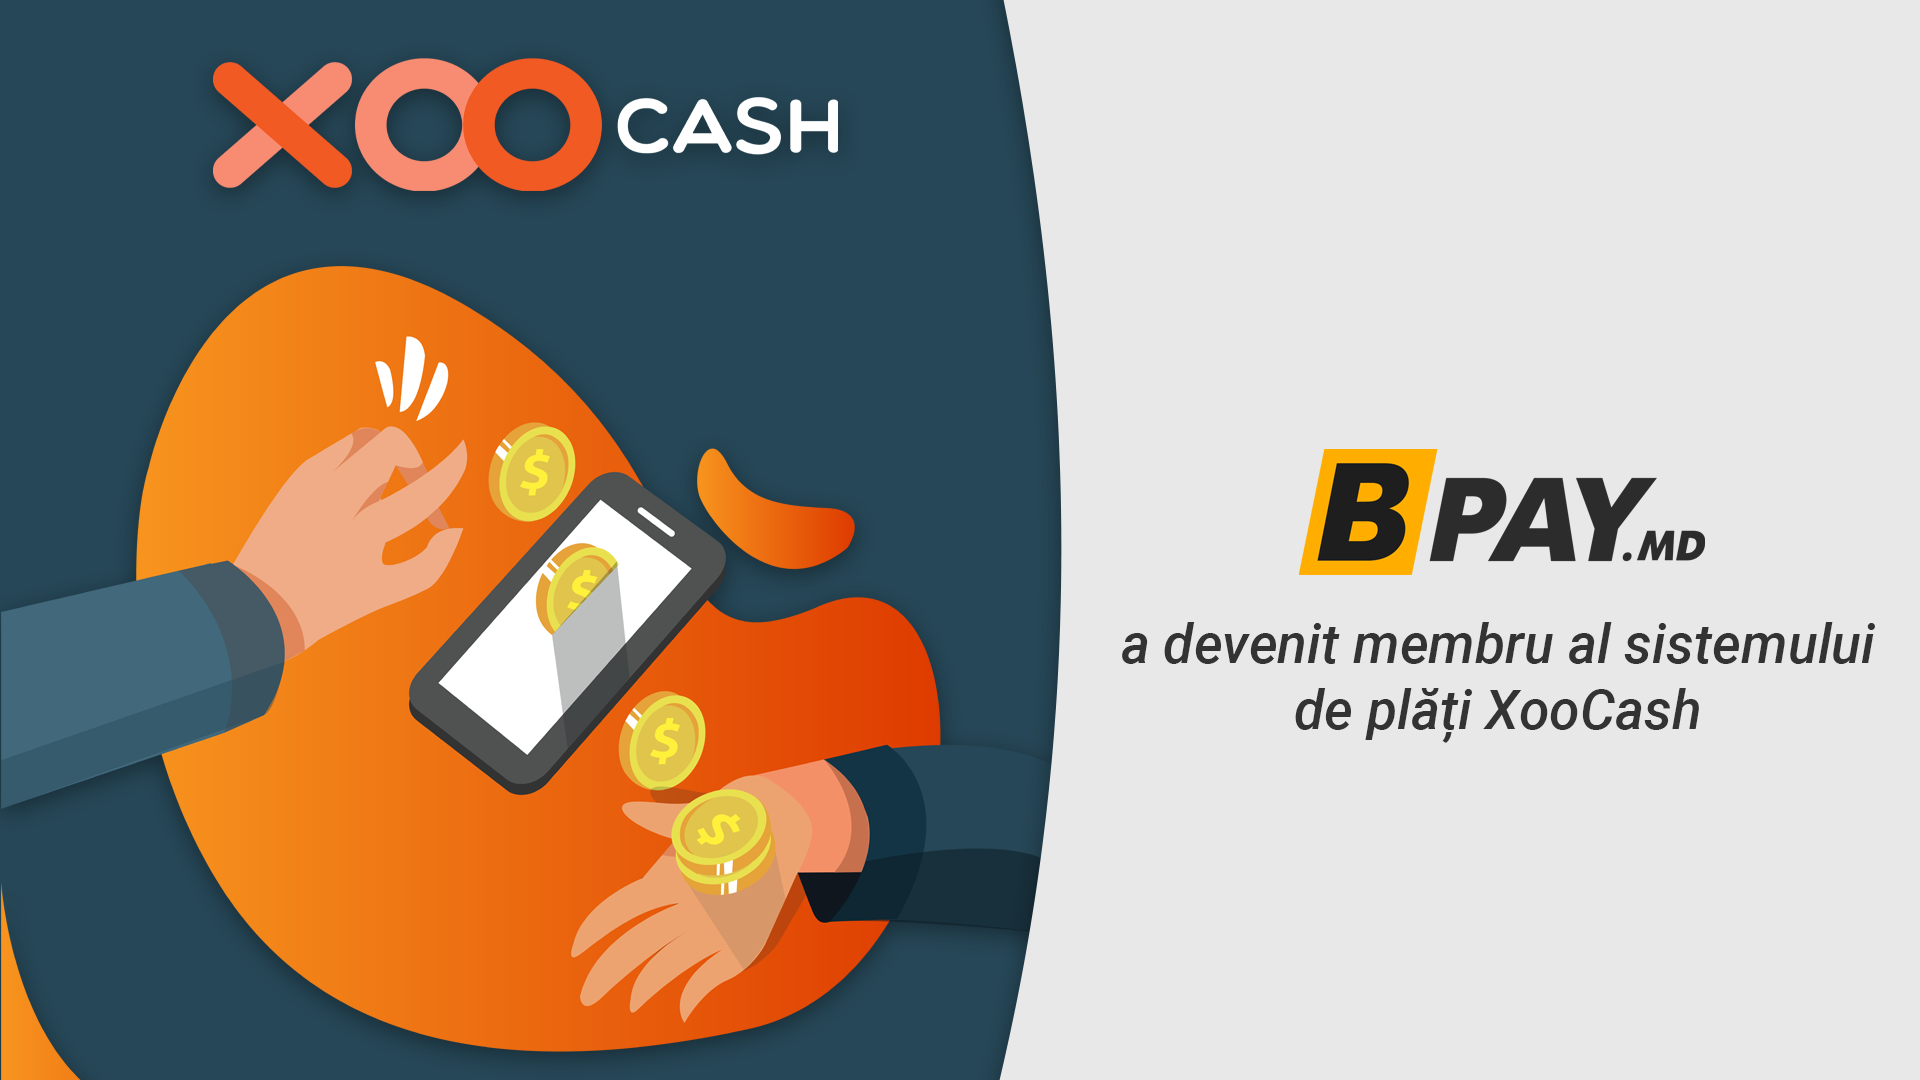 BPay a devenit membru al sistemului de plăți XooCash